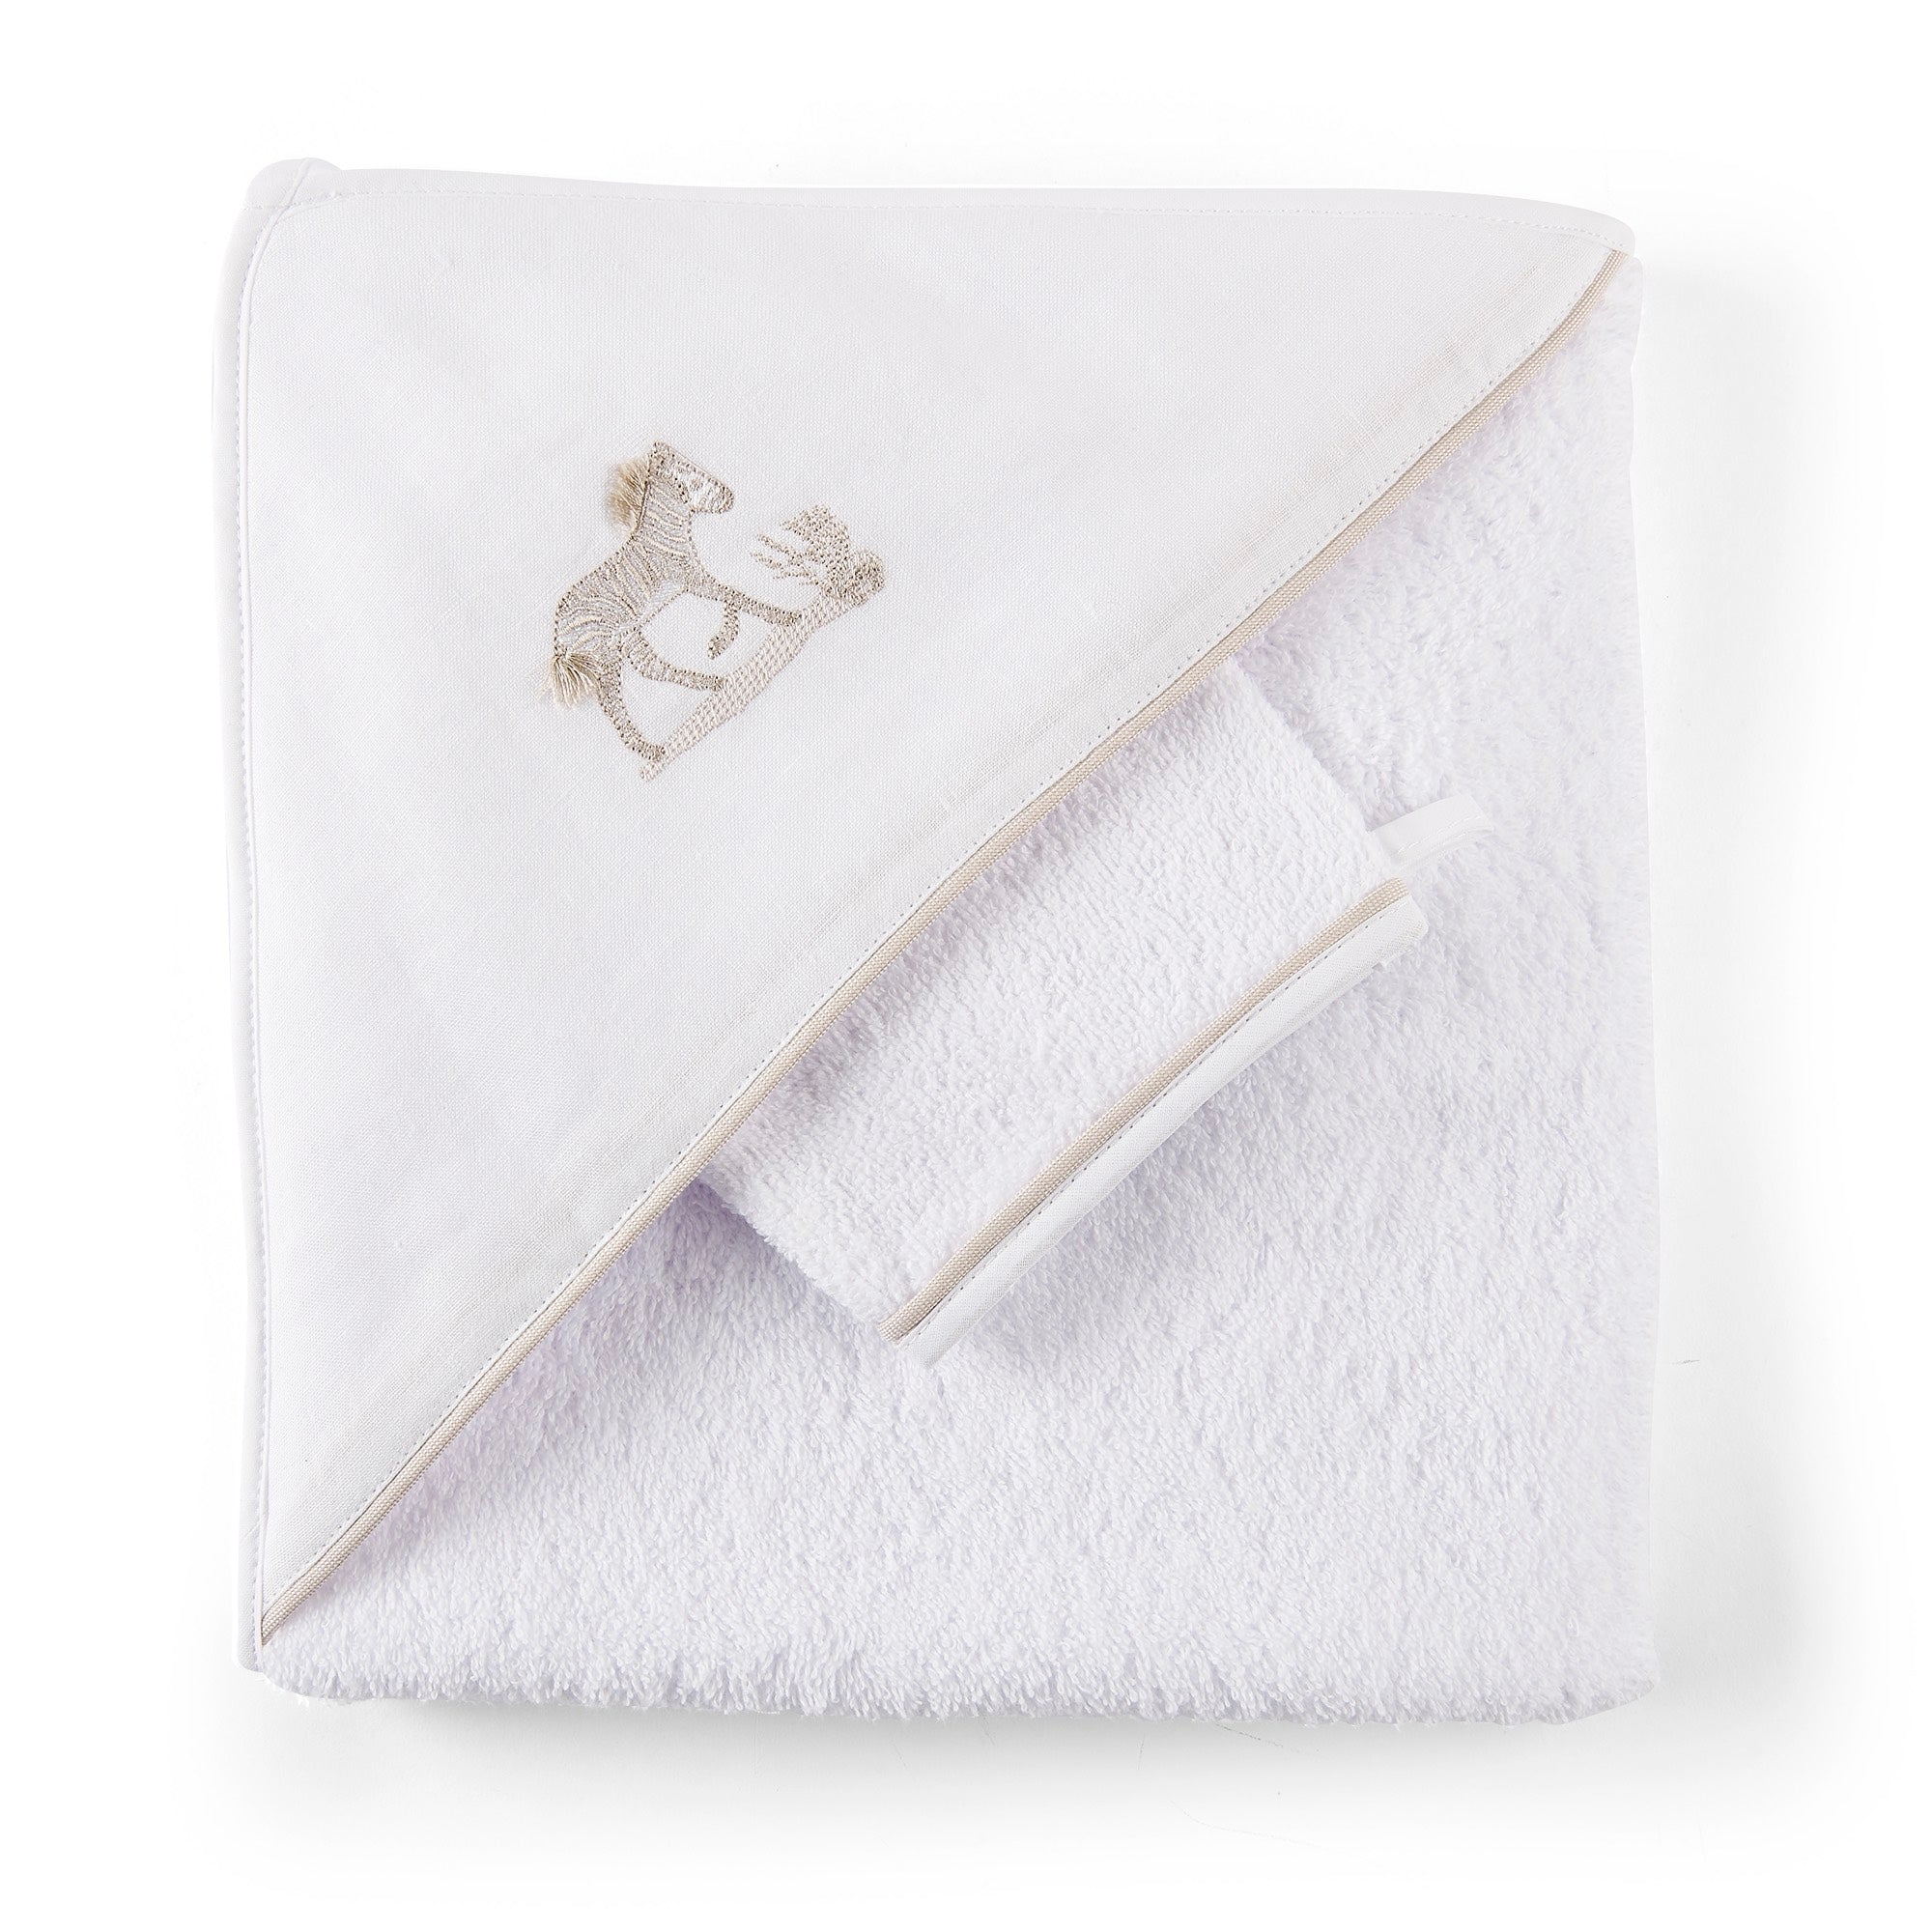 Theophile & Patachou Hooded Towel and Wash Glove Set- Safari